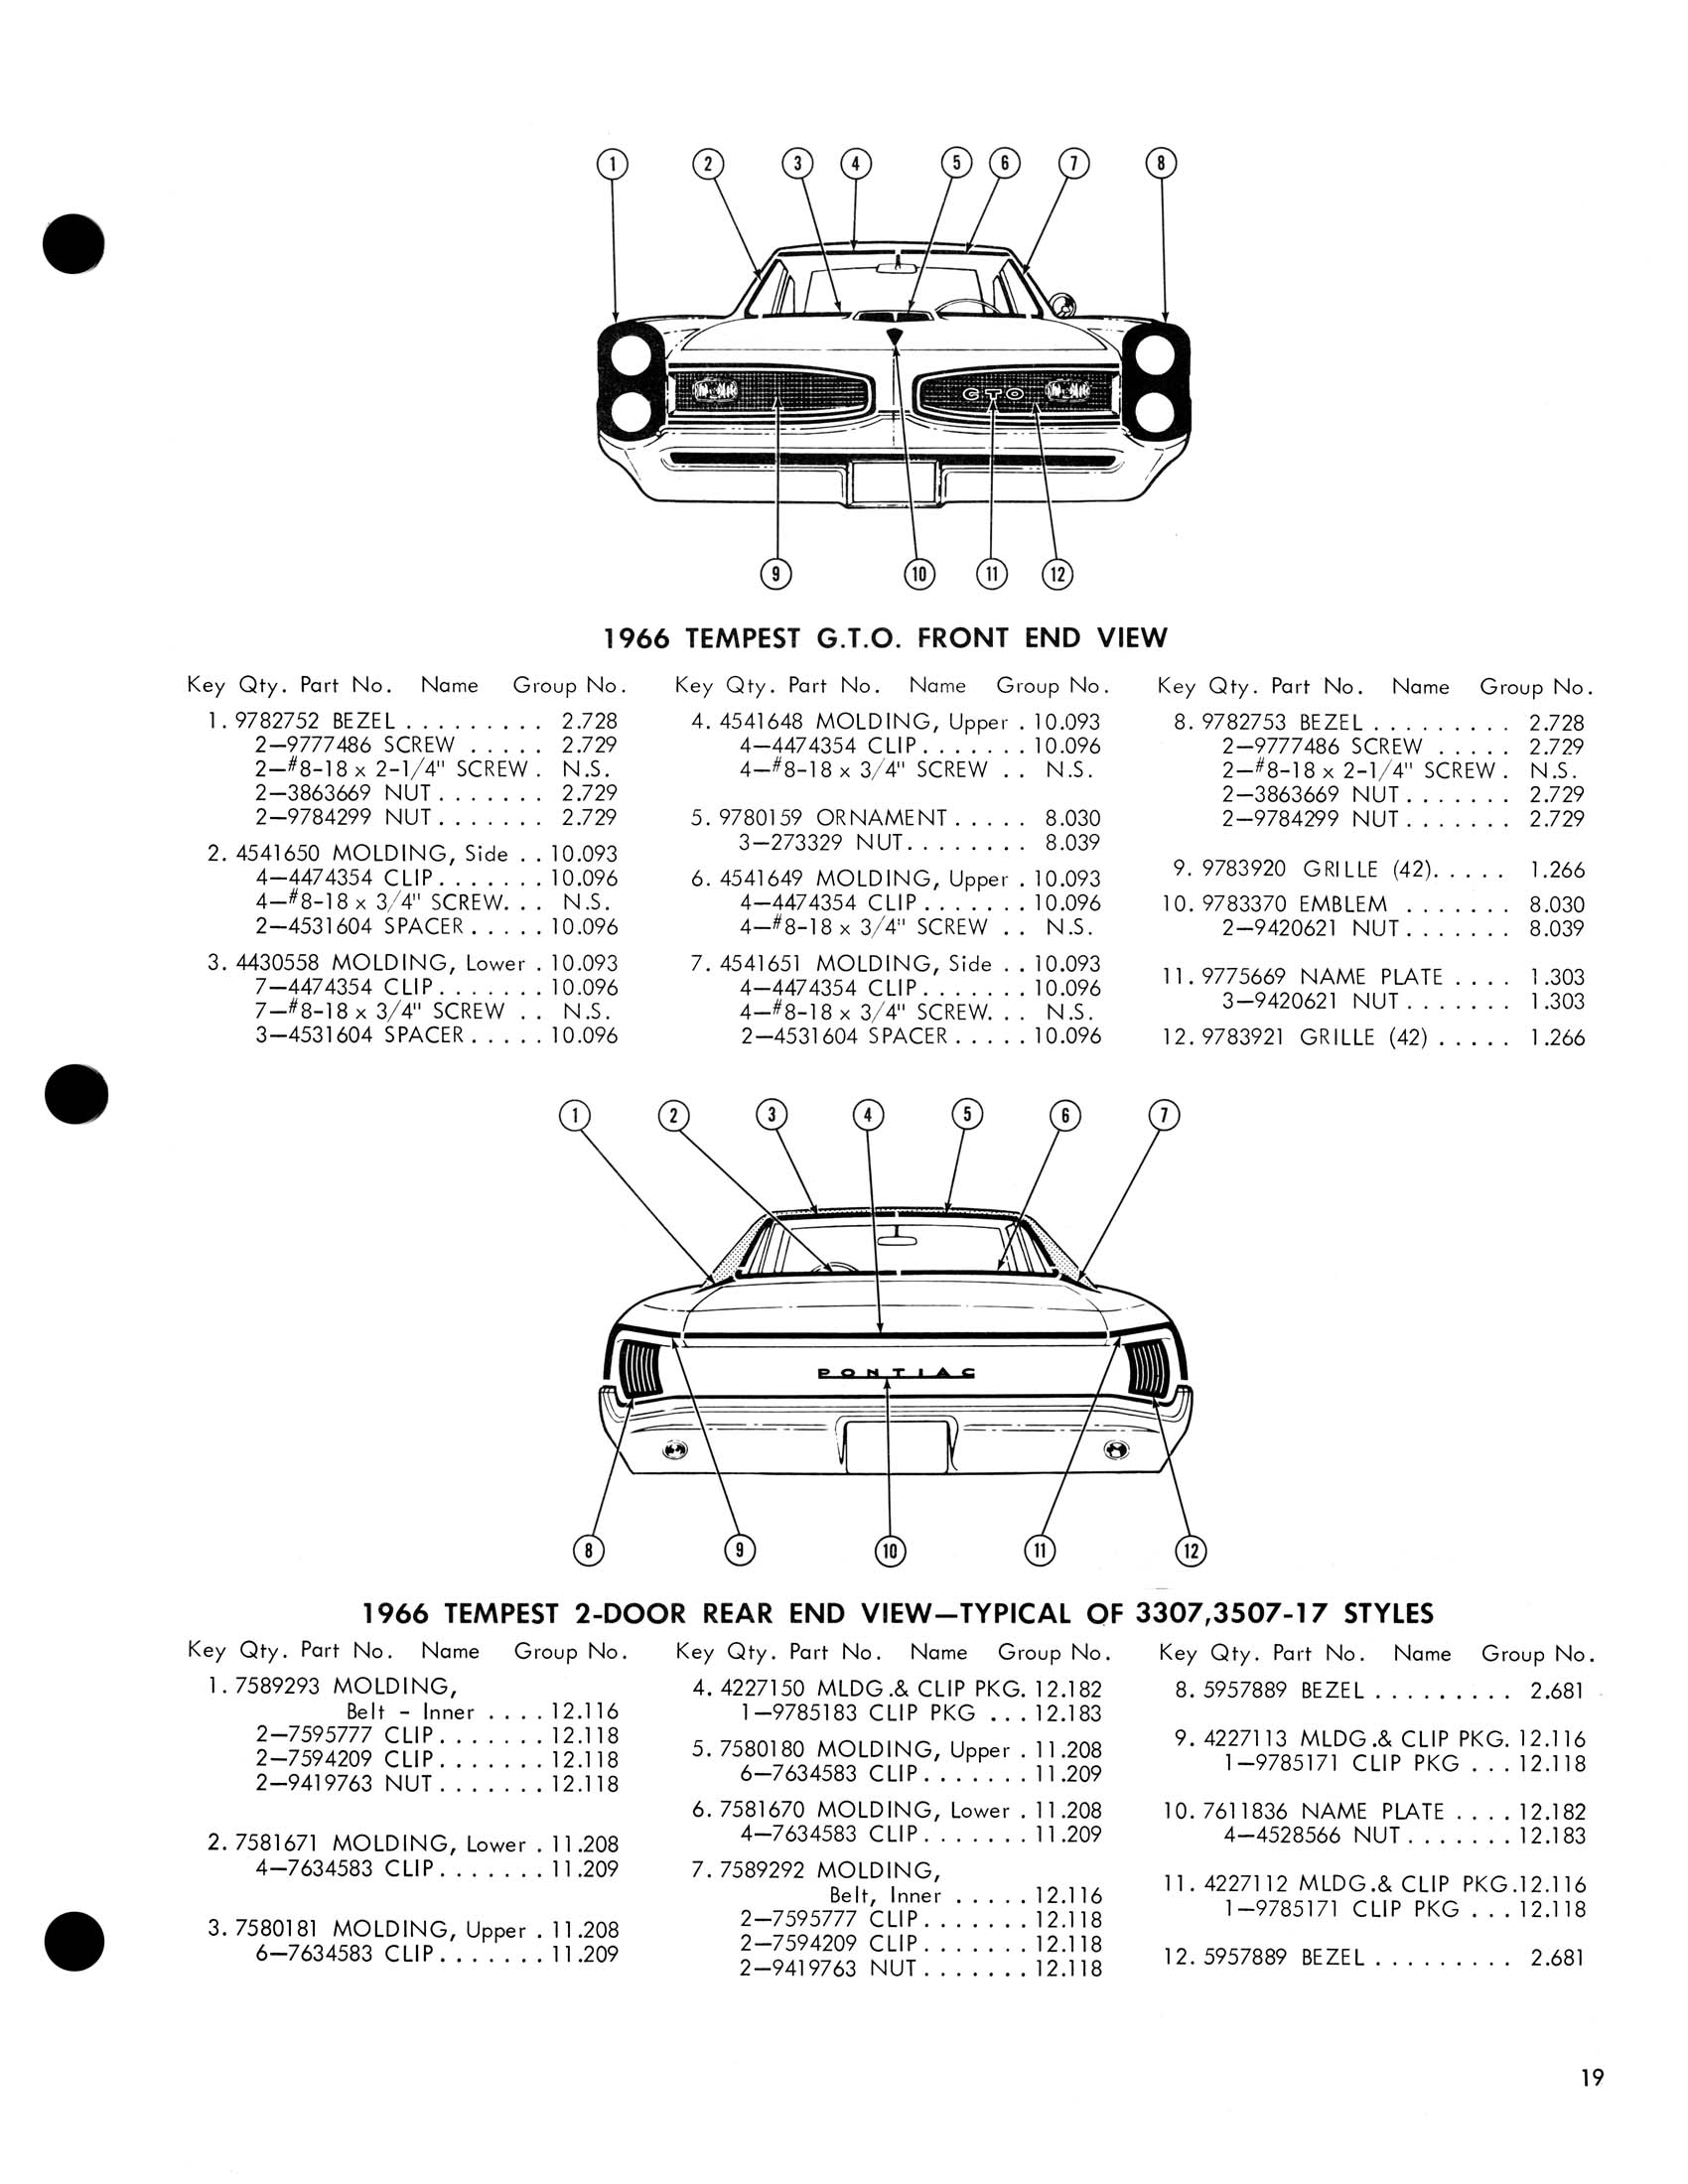 1966_Pontiac_Molding_and_Clip_Catalog-19